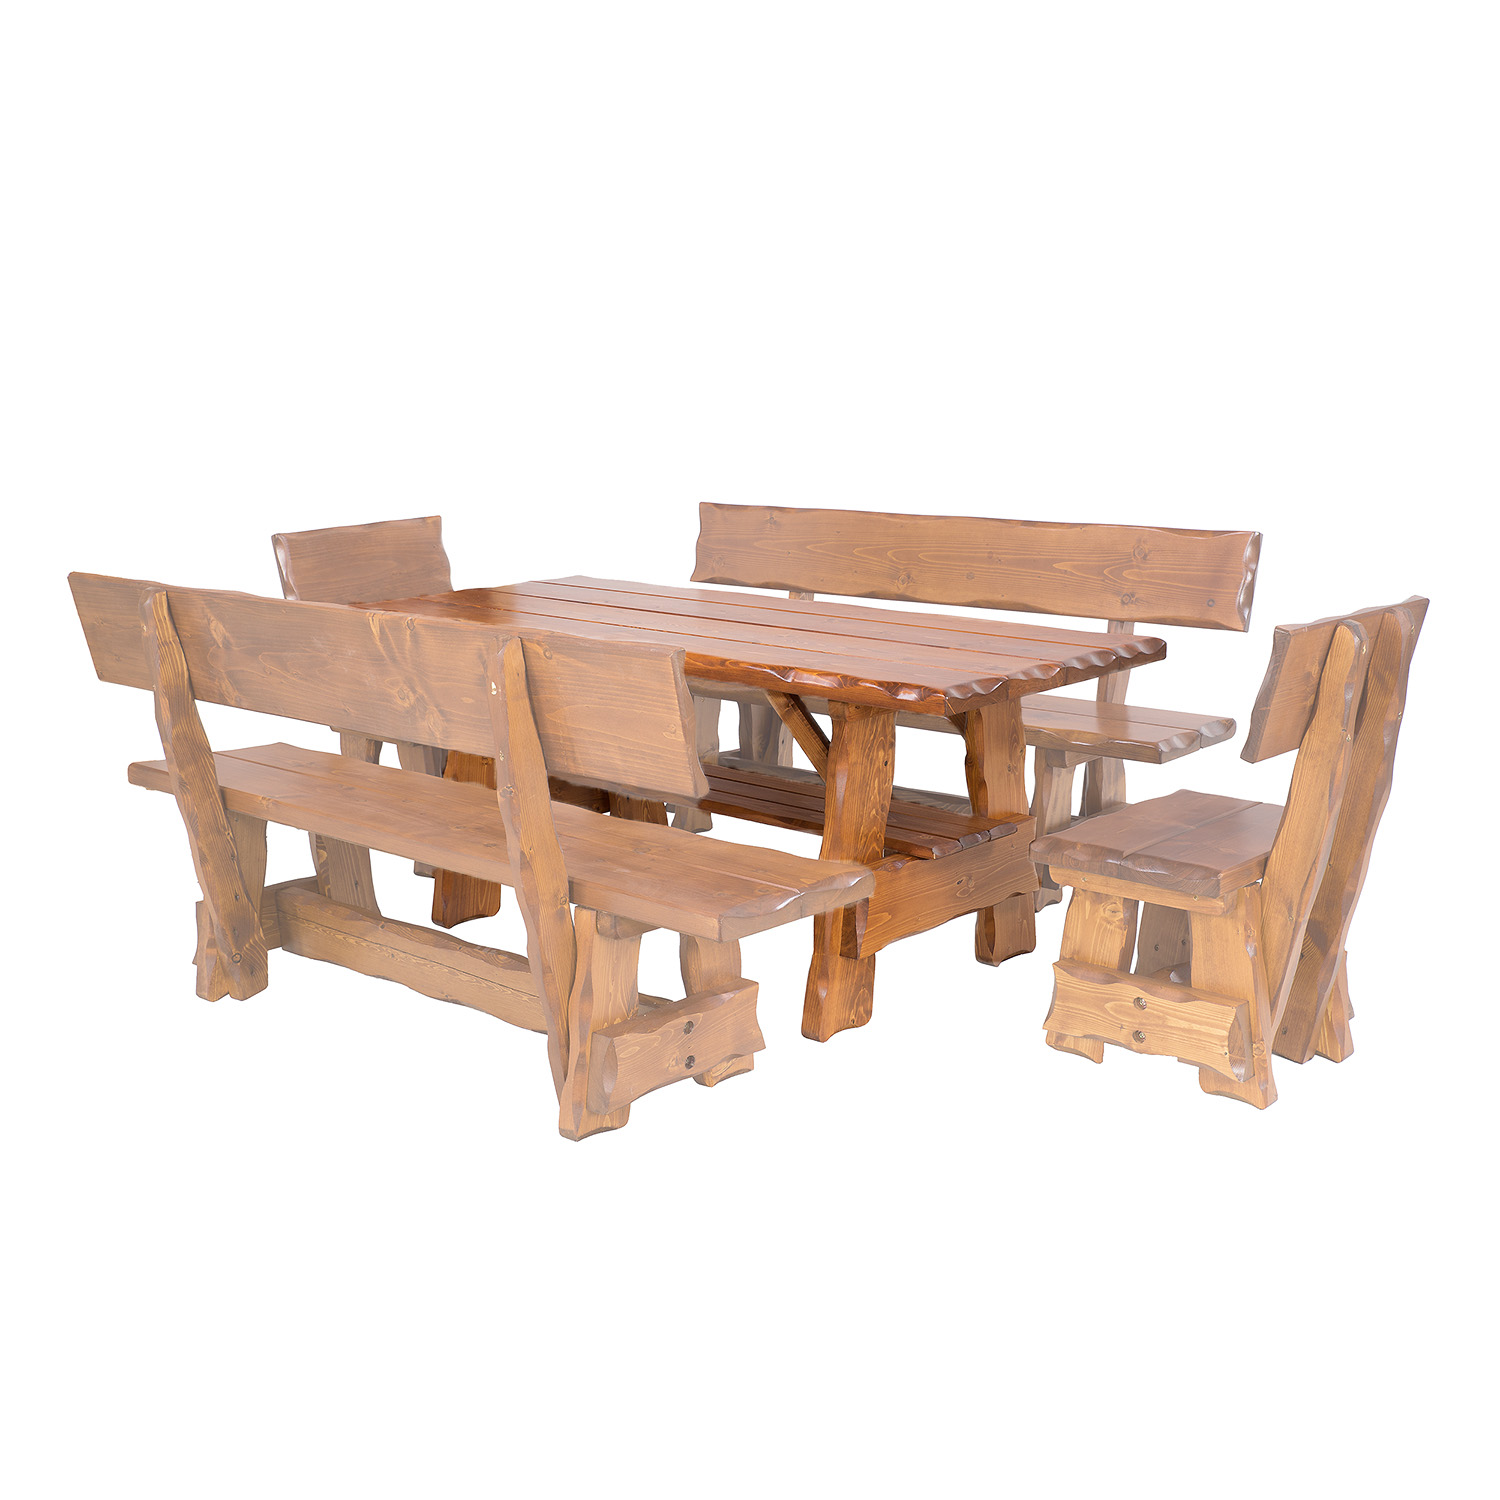 Zahradní stůl ze smrkového dřeva, lakovaný 200x80x83cm - Ořech lak